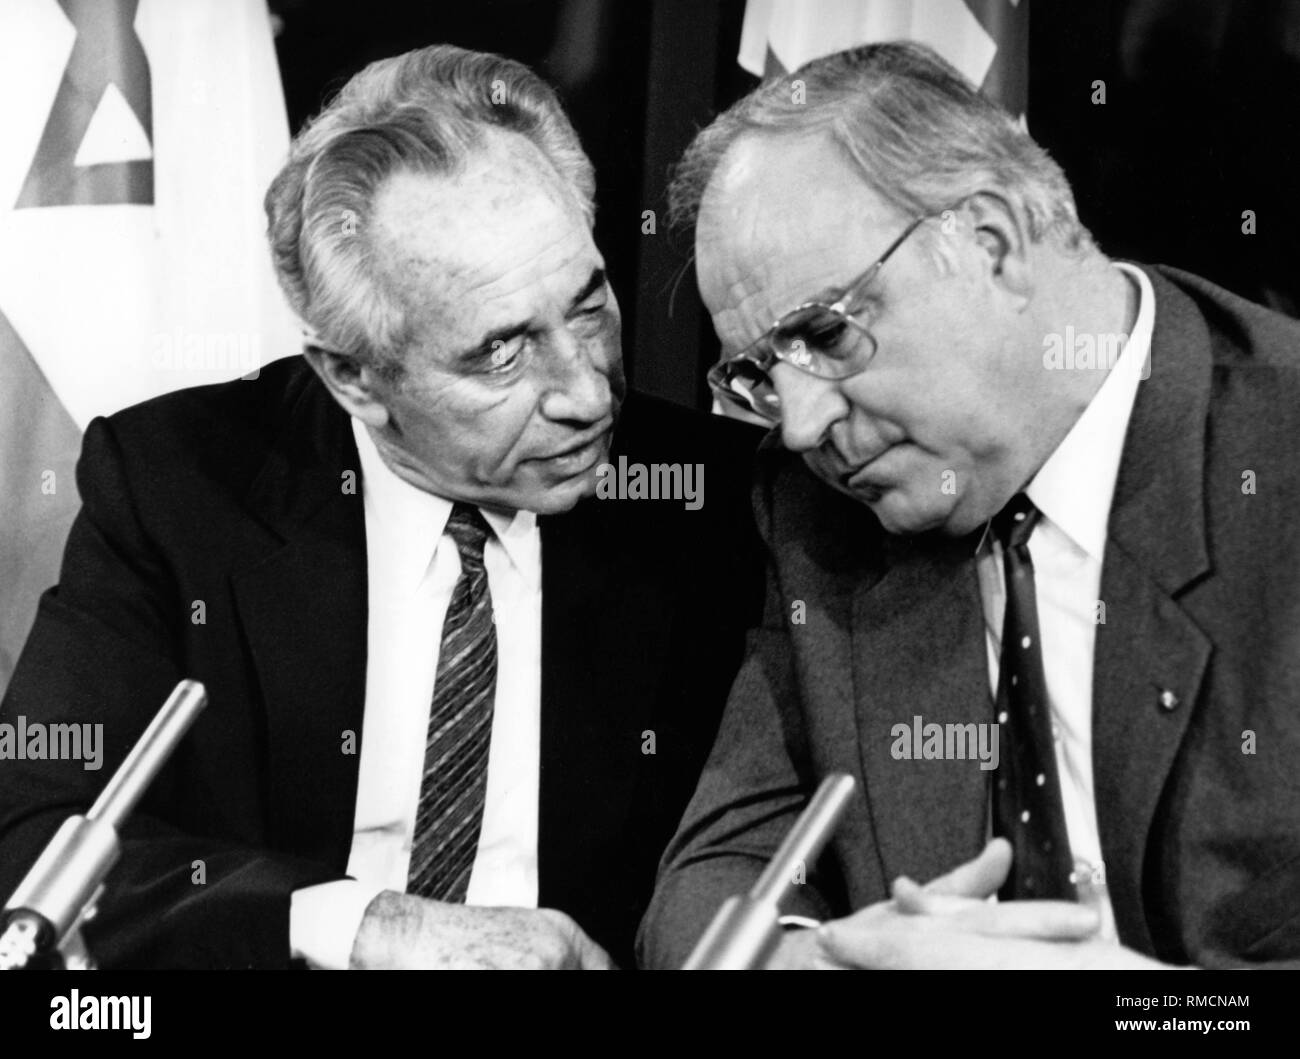 Le Premier ministre israélien Shimon Peres et l'Ouest chancelier allemand Helmut Kohl en conversation. Probablement au cours d'une conférence de presse. Banque D'Images